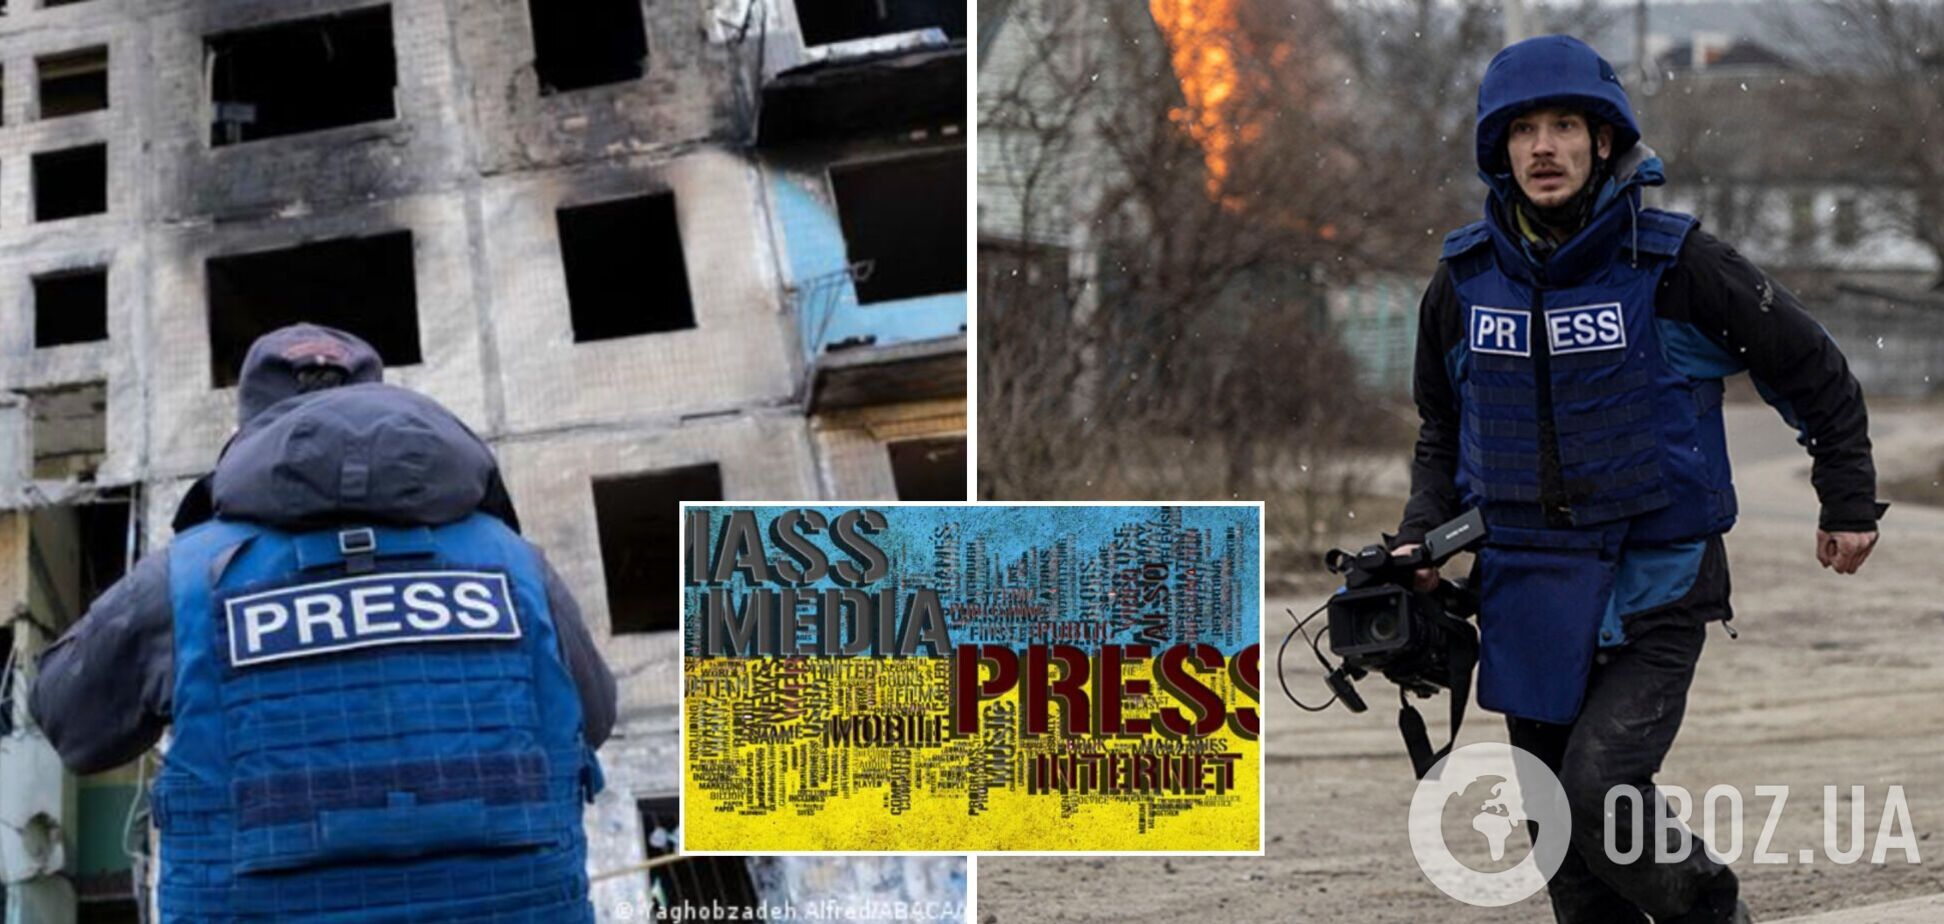 НСЖУ создаст Фонд поддержки украинских медиа, чтобы помочь журналистам в военное время